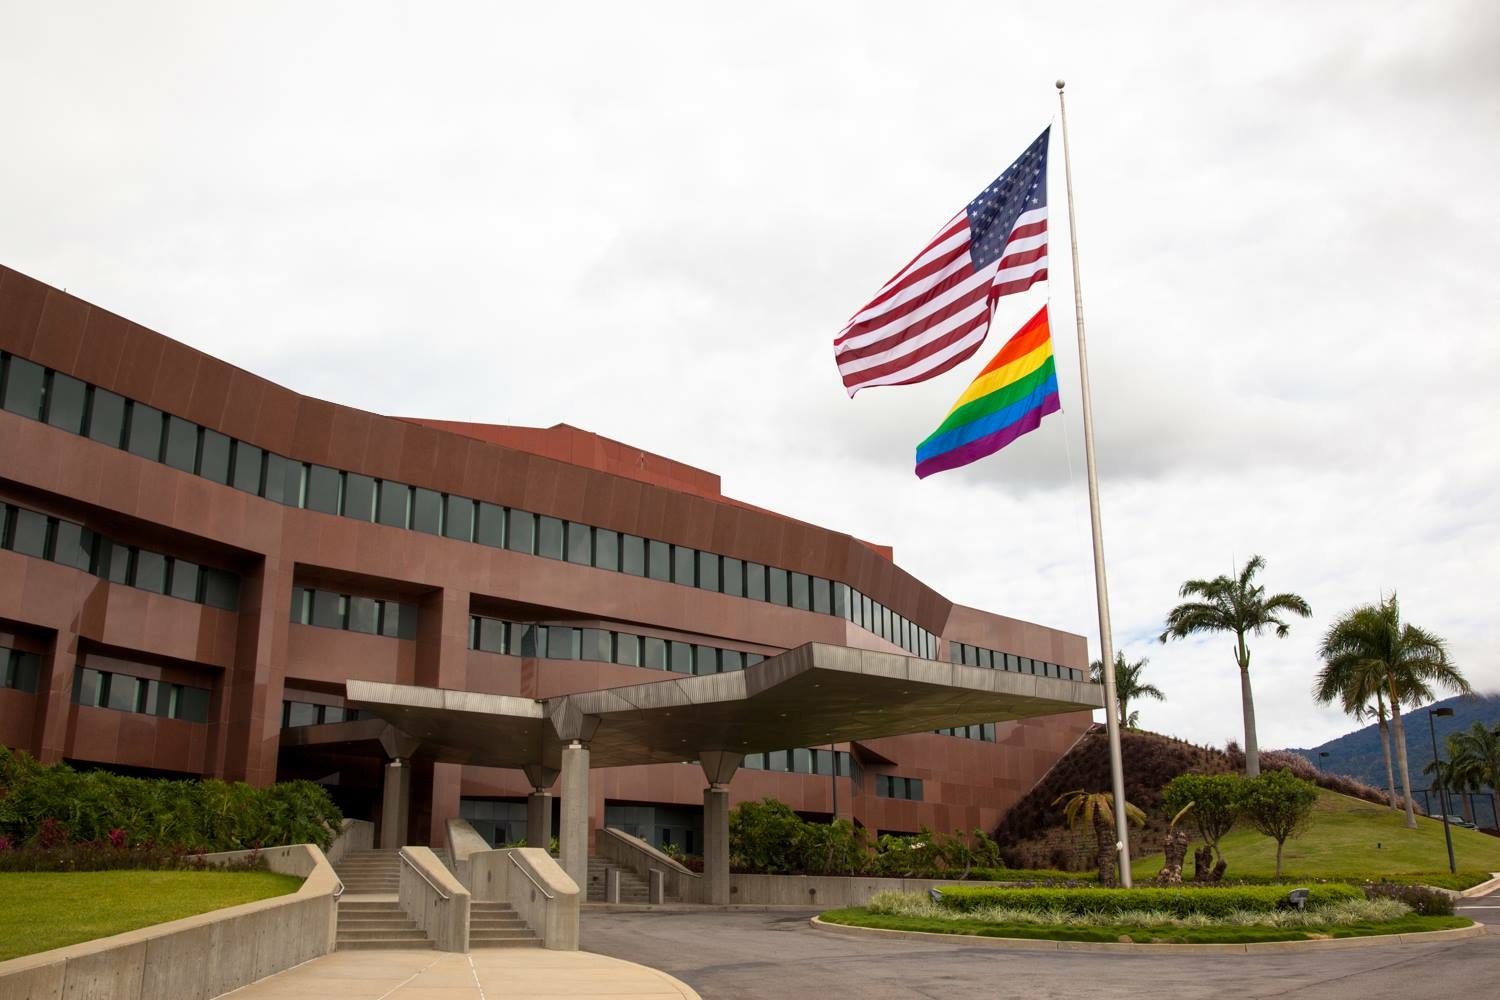 Bandera arcoíris, símbolo de “Orgullo LGBTI” ondea en la embajada de EEUU en Venezuela